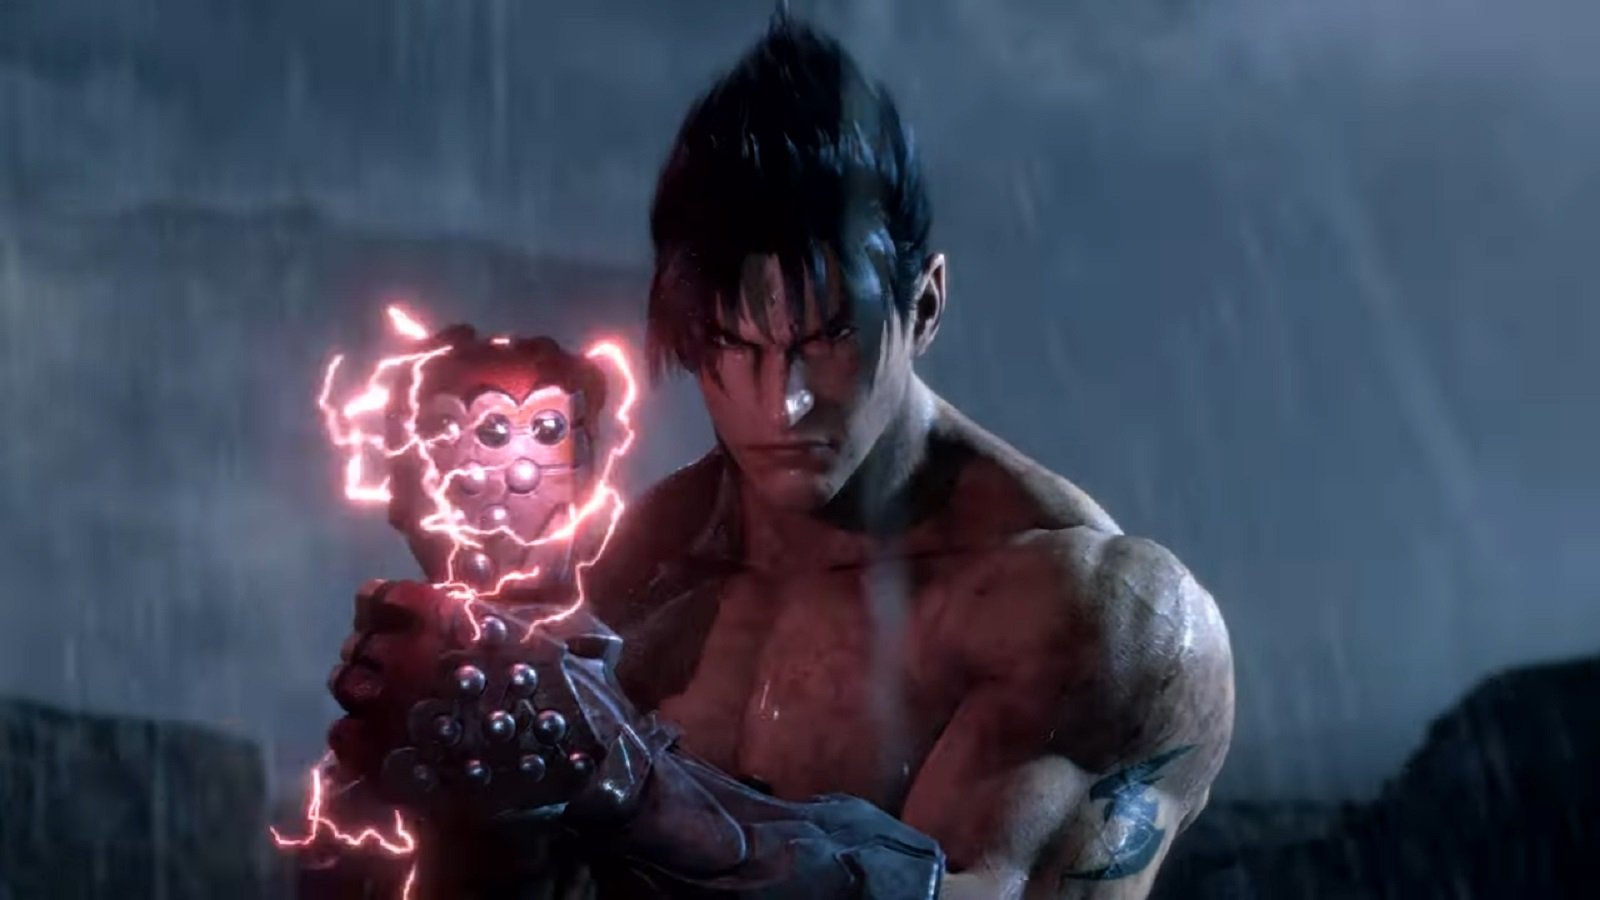 Tekken 8 Trailer Features Kazuya Mishima in Action